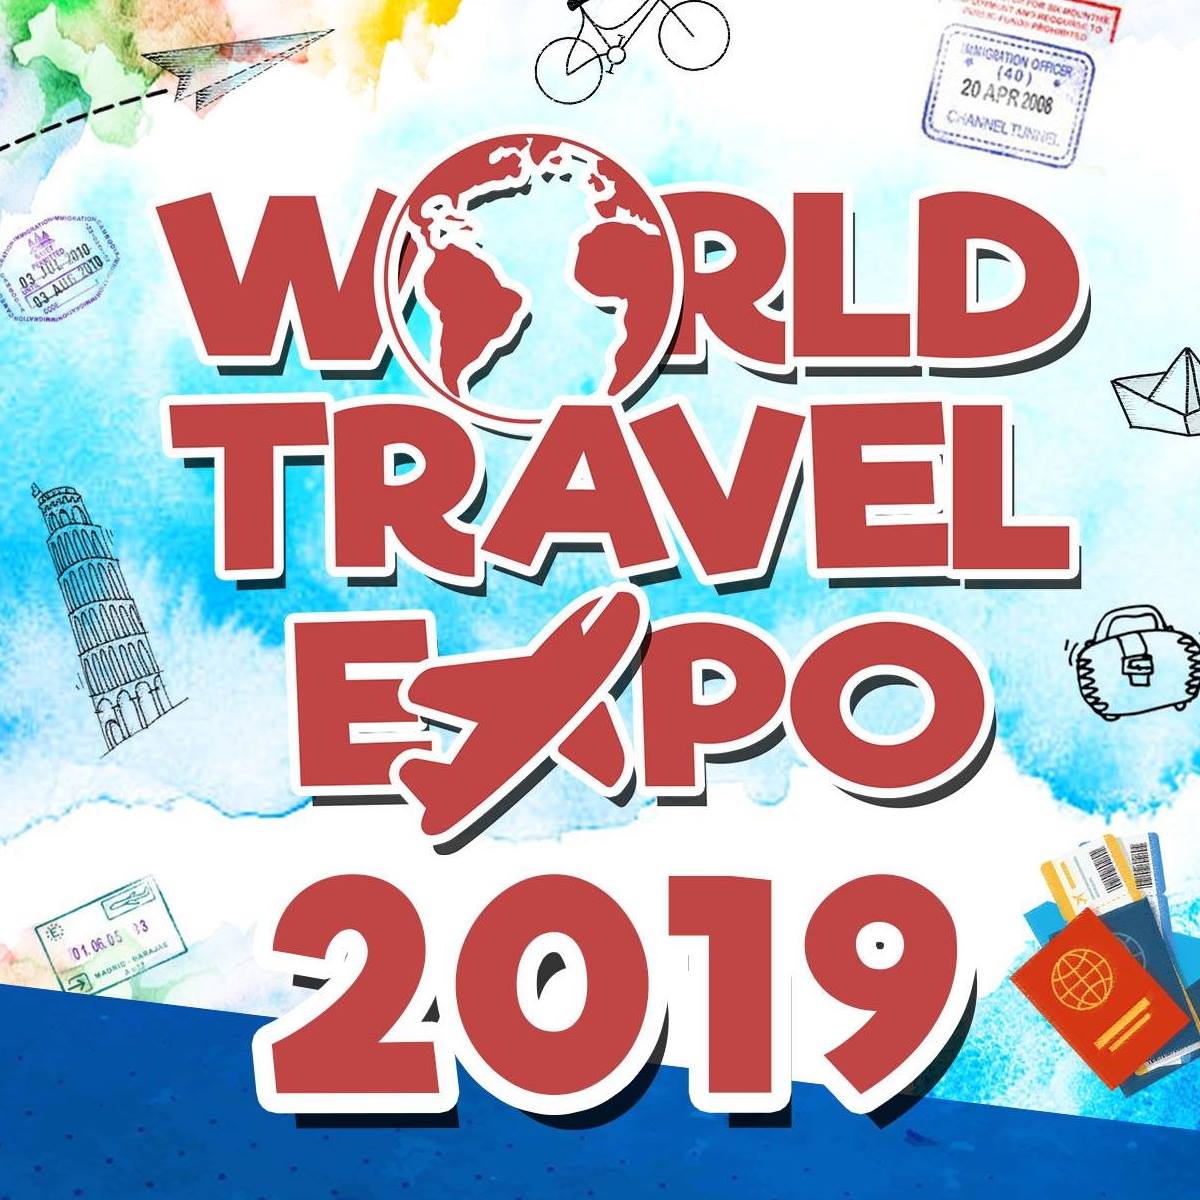 World Travel Lifestyle Expo 2019